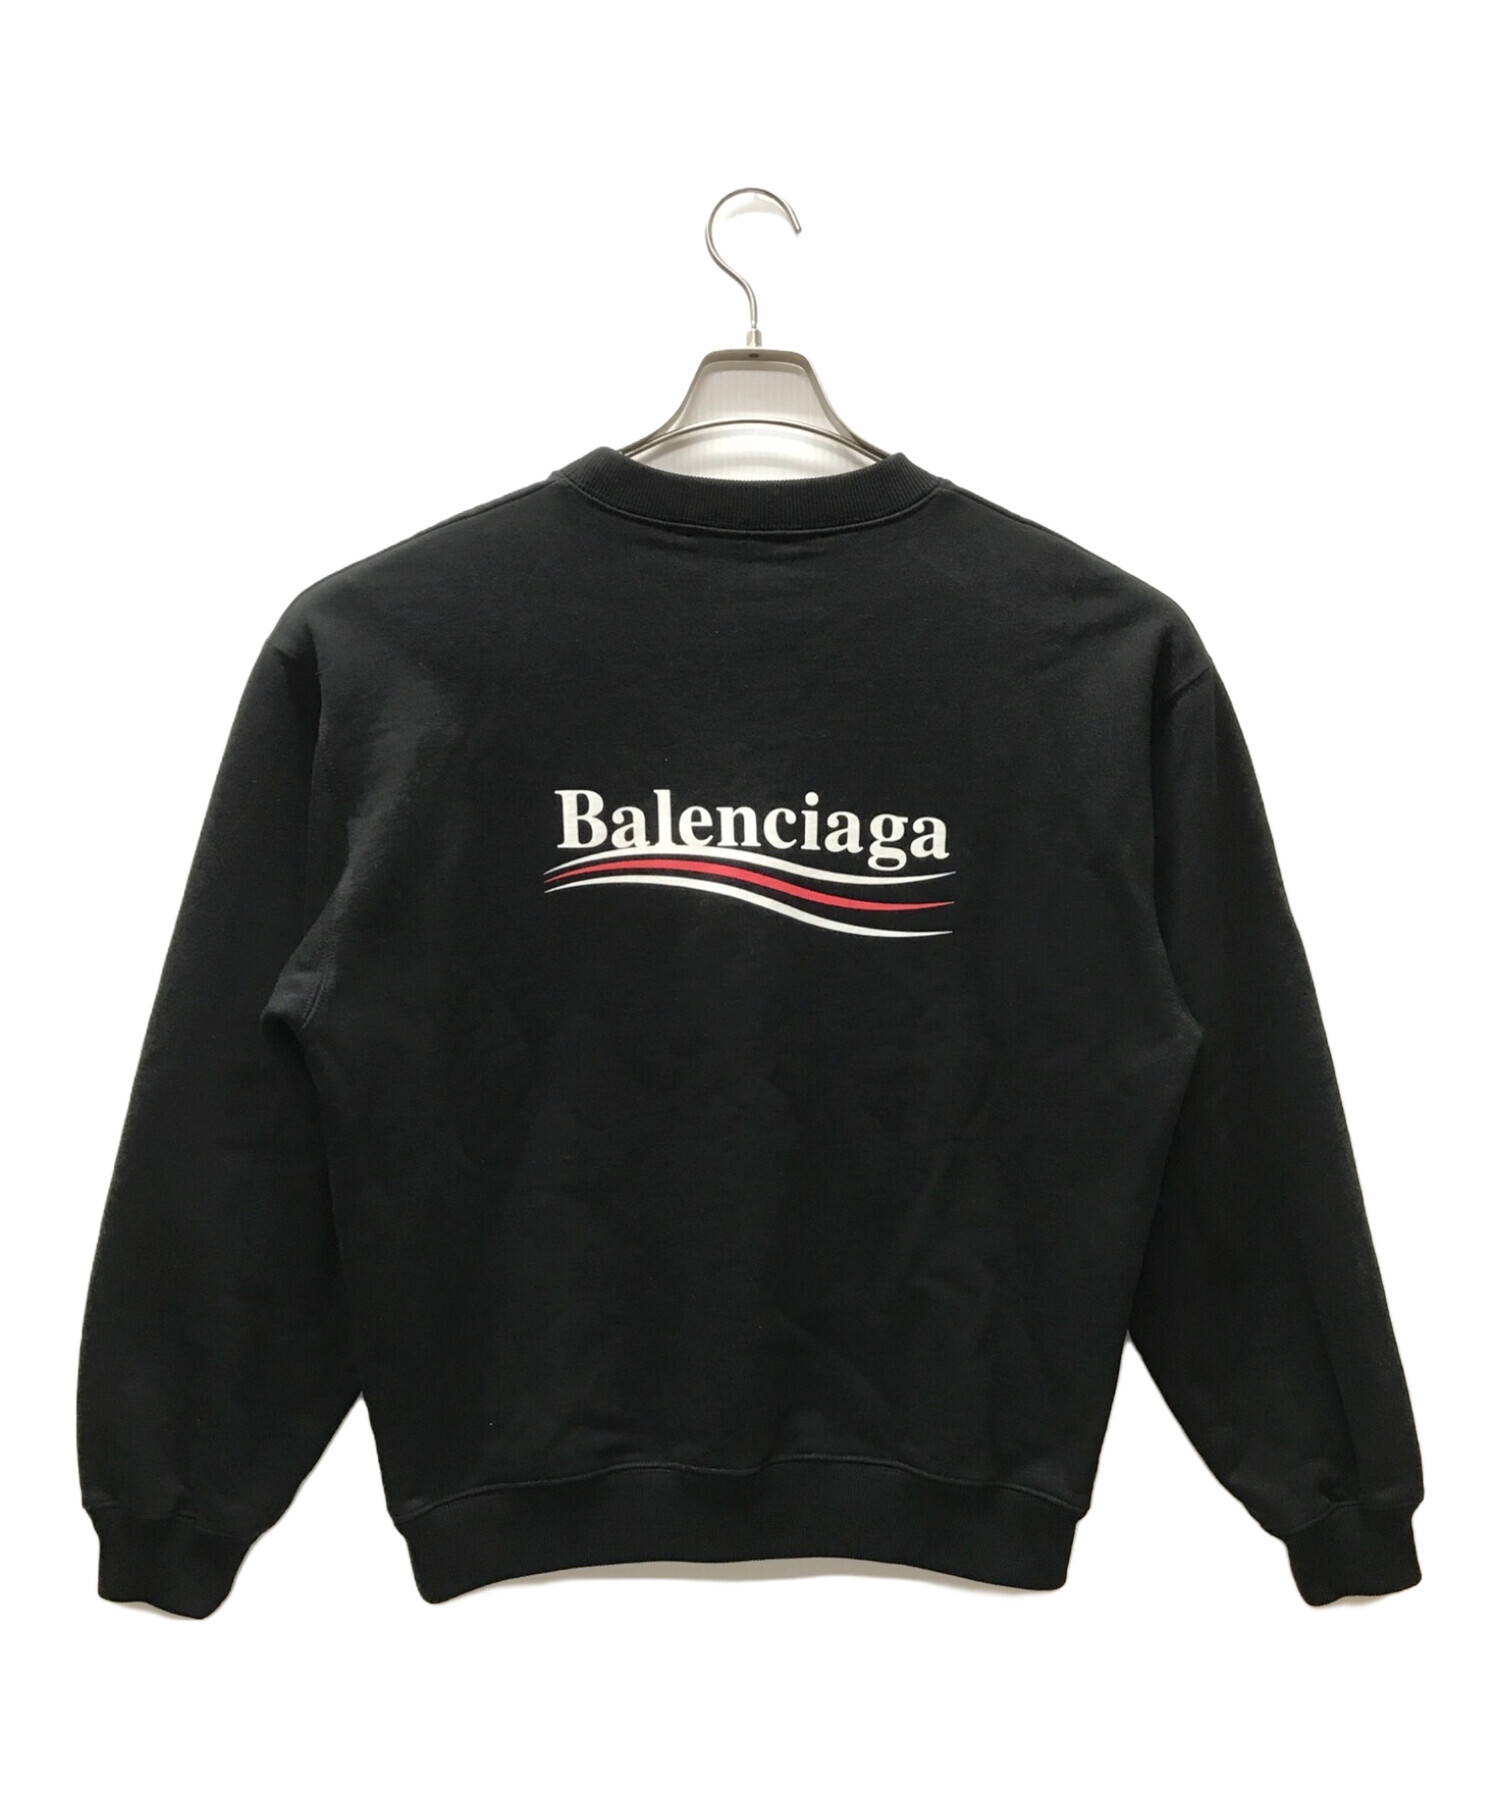 BALENCIAGA (バレンシアガ) キャンペーンロゴスウェット ブラック サイズ:S